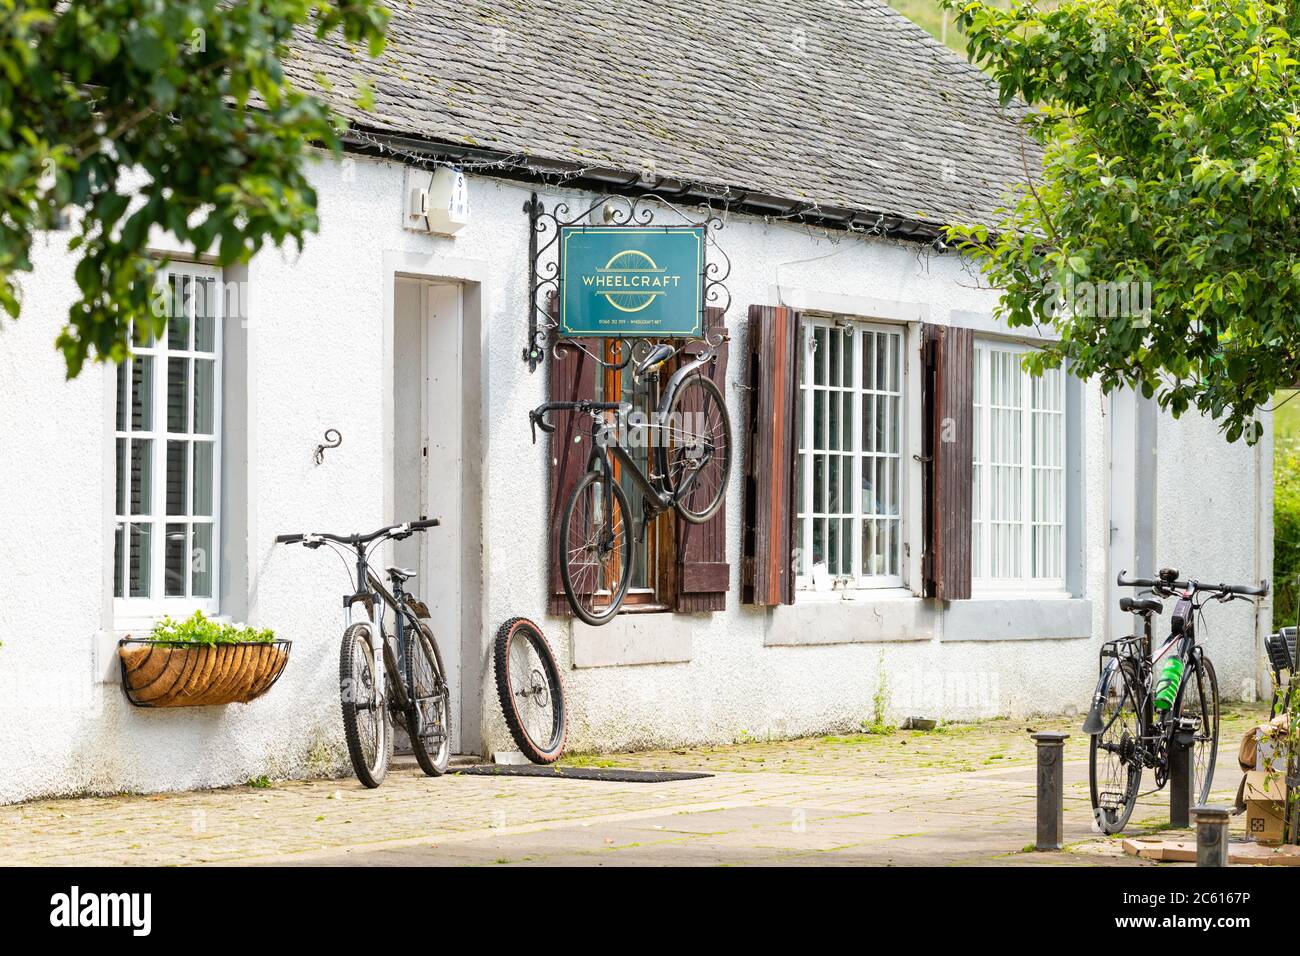 Wheelcraft unabhängiger traditioneller Fahrradladen, der handgefertigte Fahrradräder und Fahrradreparaturen anbietet, Clachan of Campsie, Campsie Glen, Schottland, UK Stockfoto